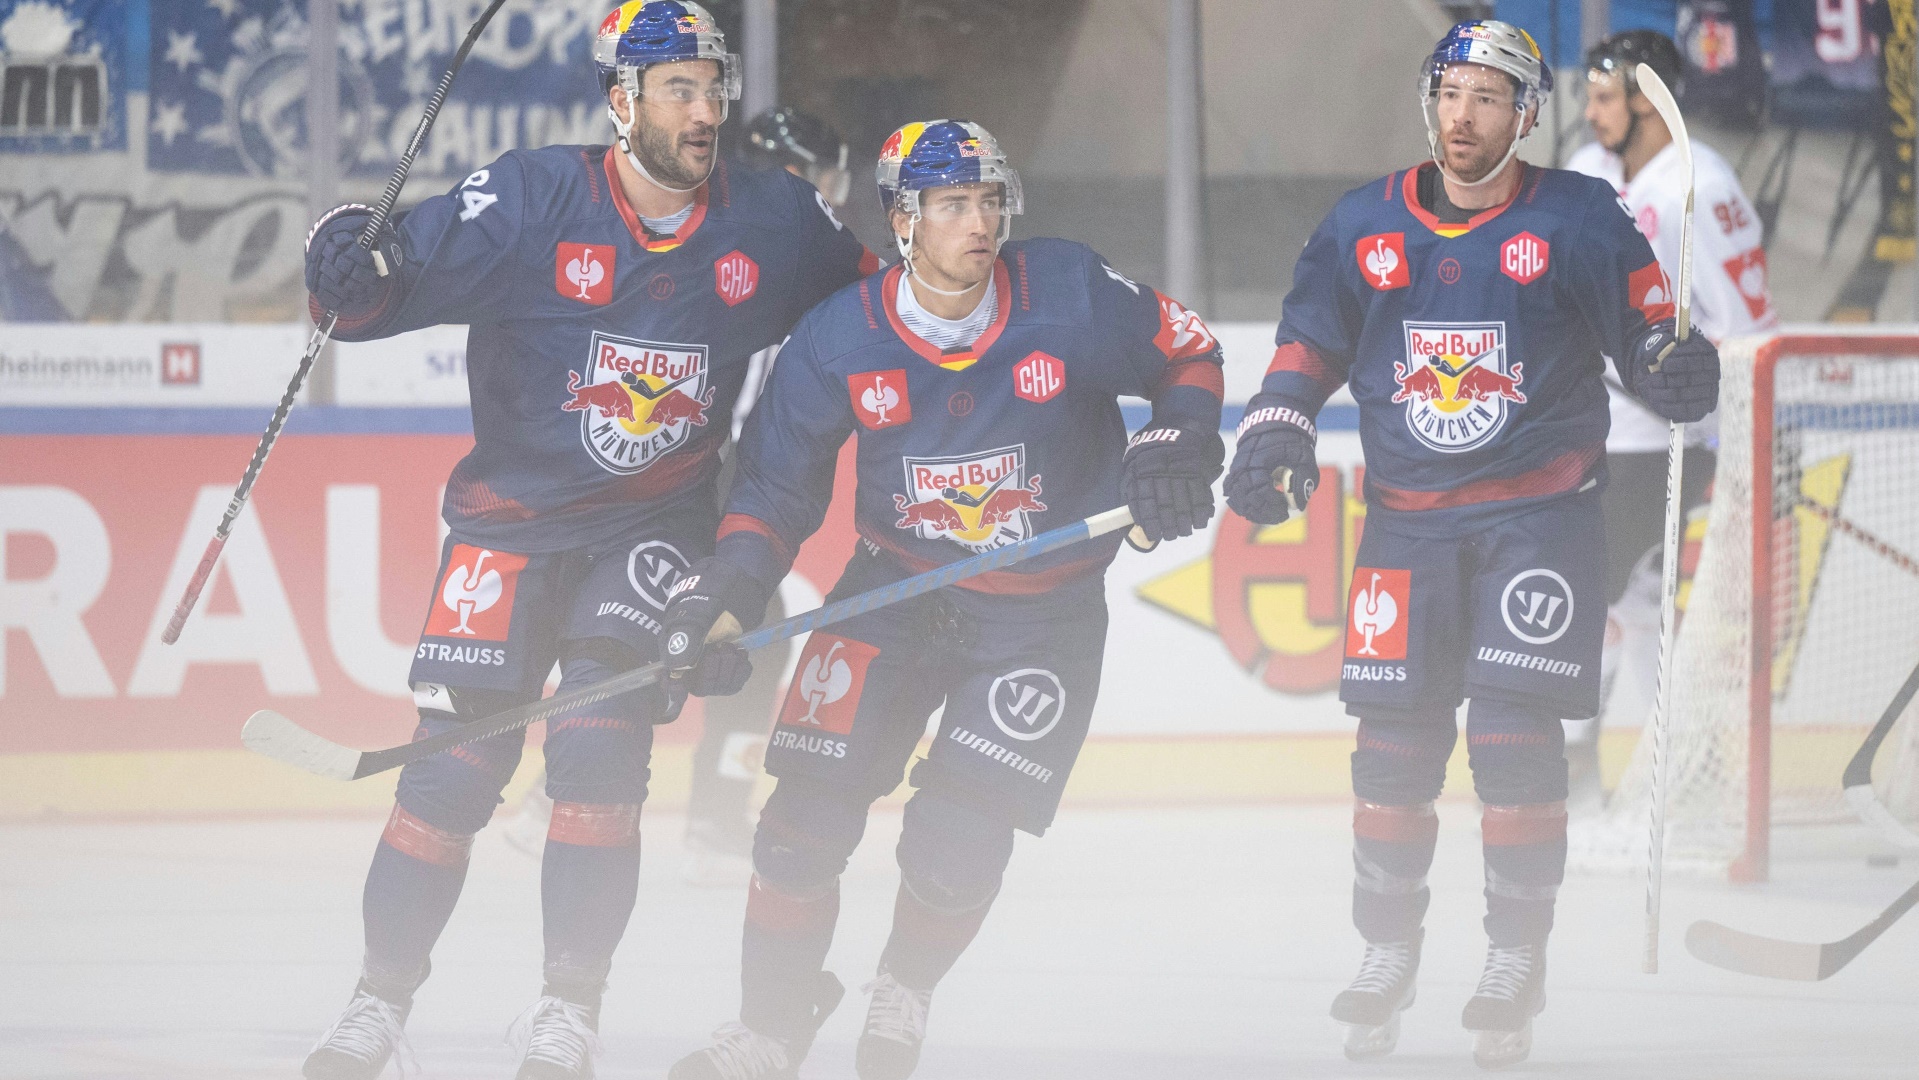 Eishockey Red Bull München mit zweitem Sieg in der CHL